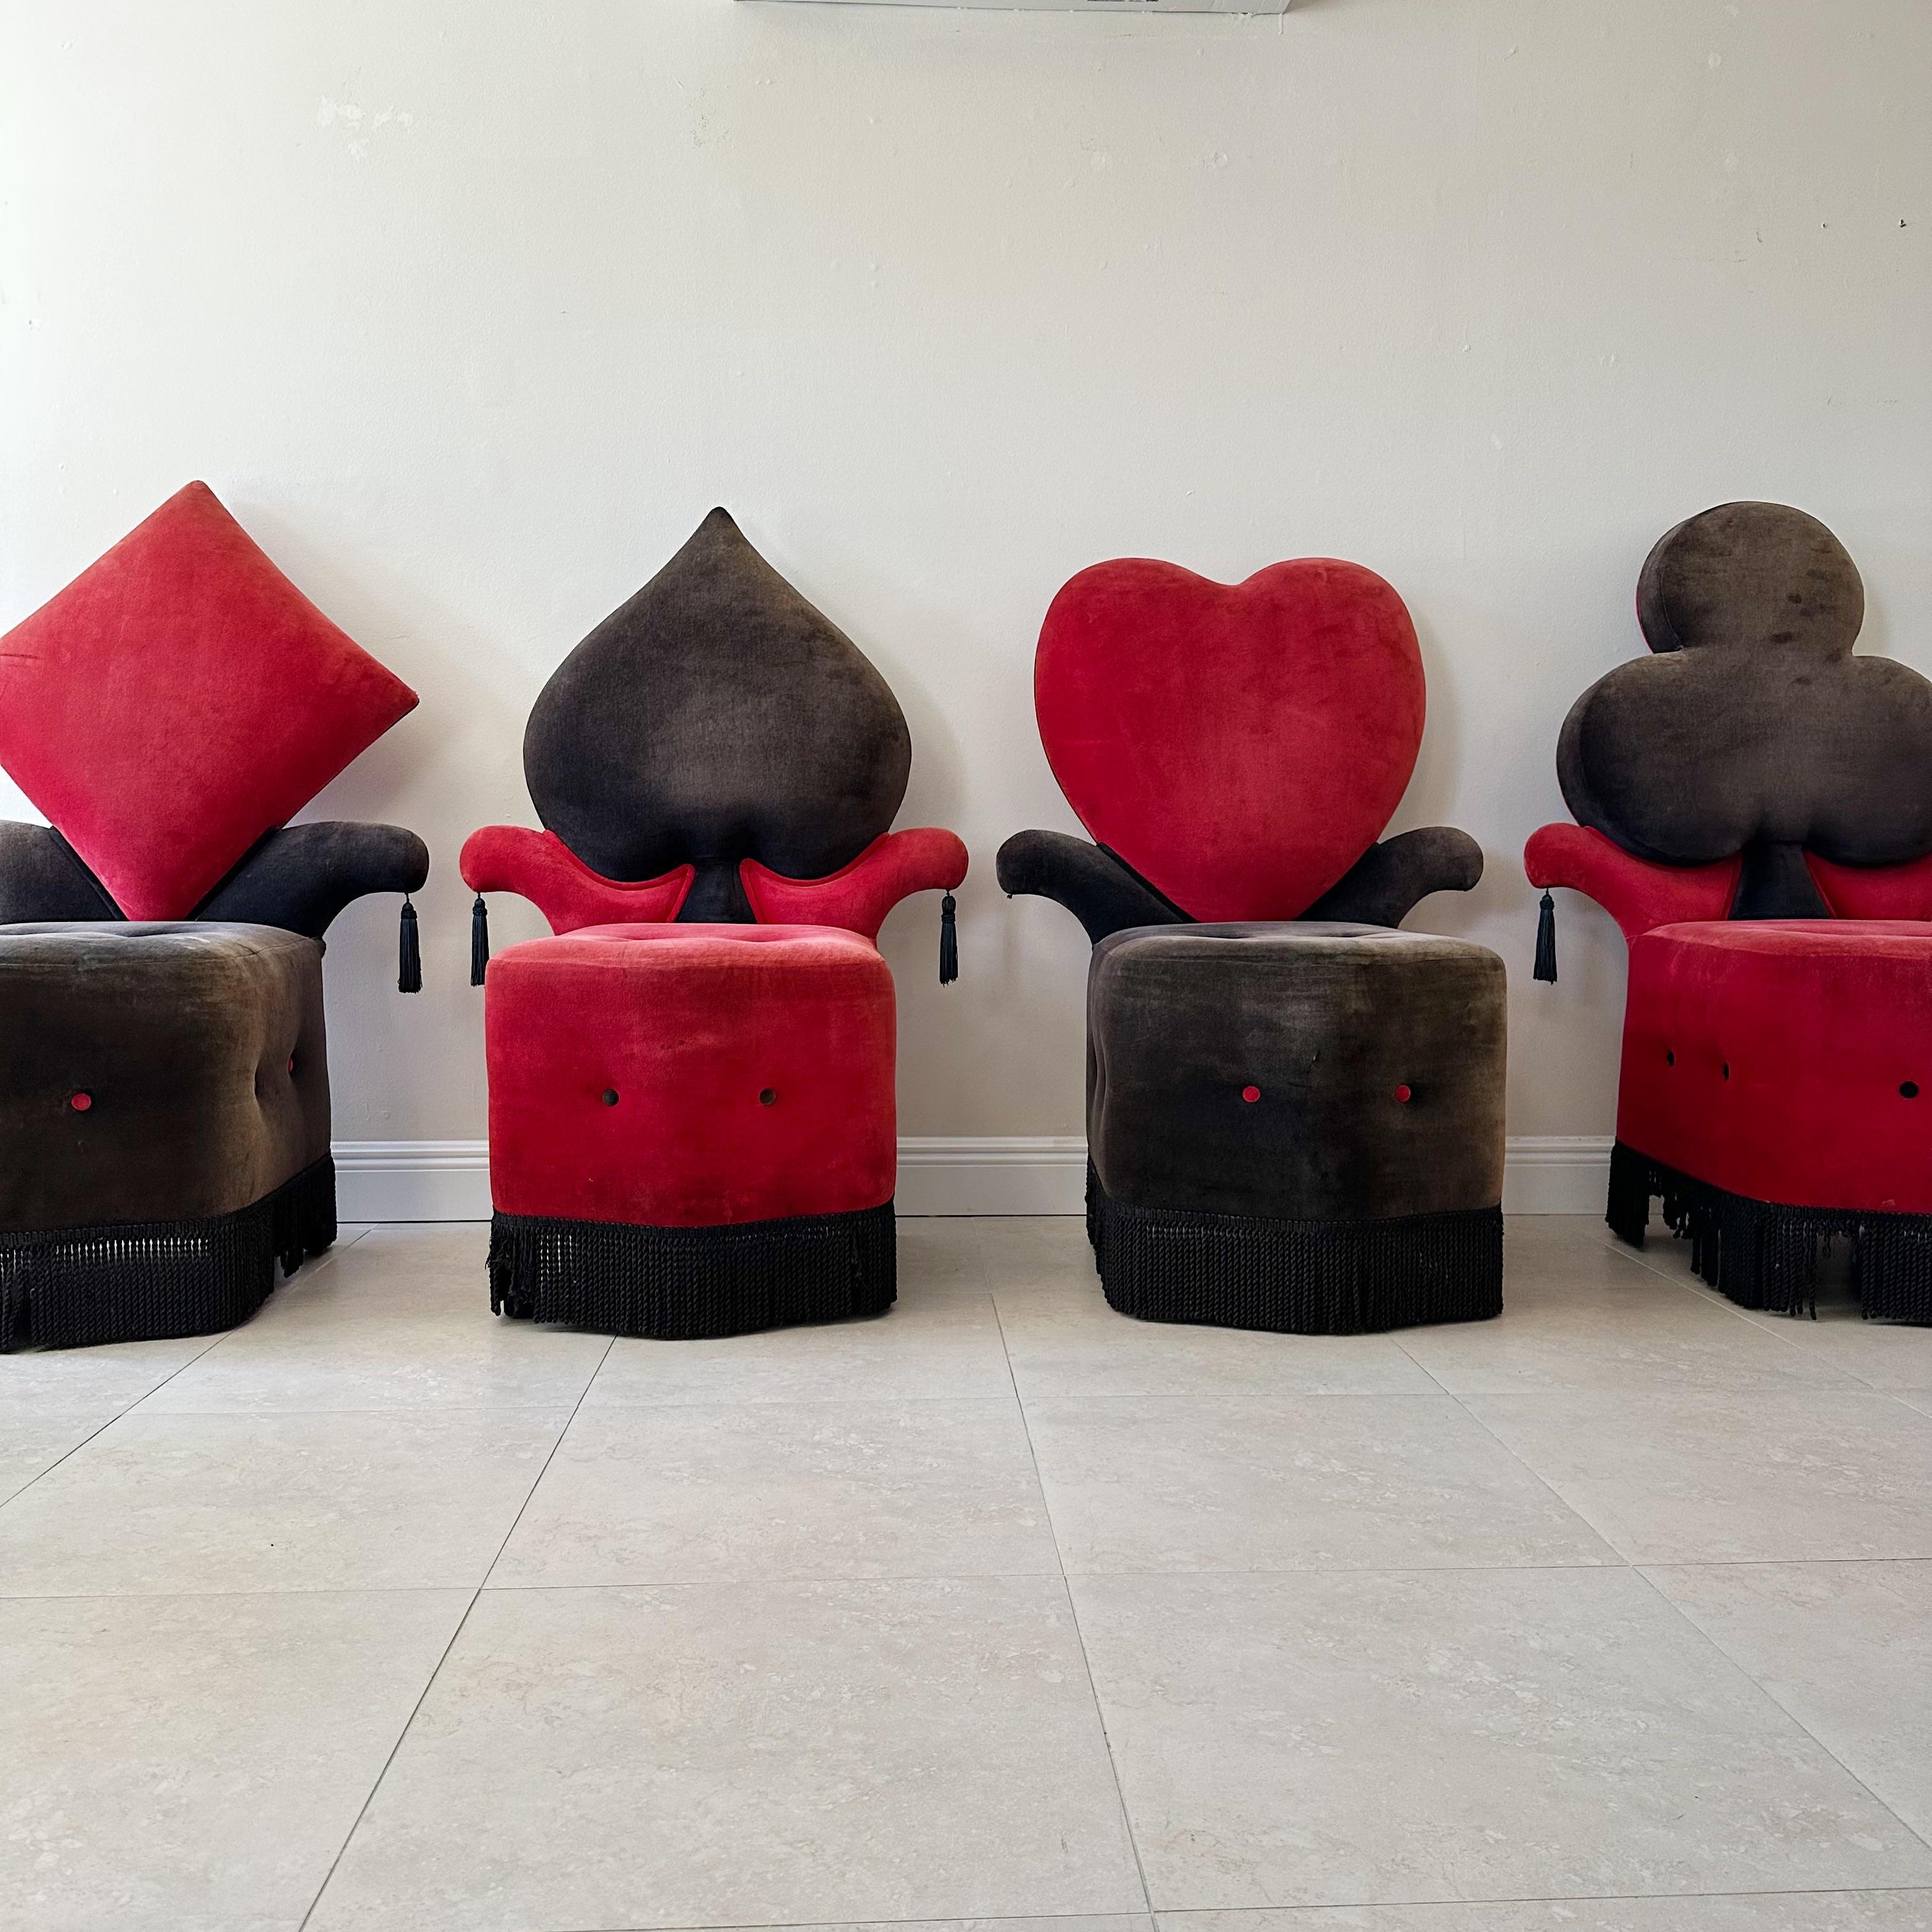 Cet ensemble unique de chaises ajoutera à coup sûr une touche de fantaisie à votre décoration intérieure. L'ensemble comprend quatre chaises, chacune conçue pour ressembler à l'une des quatre couleurs de cartes à jouer : trèfle, carreau, cœur et